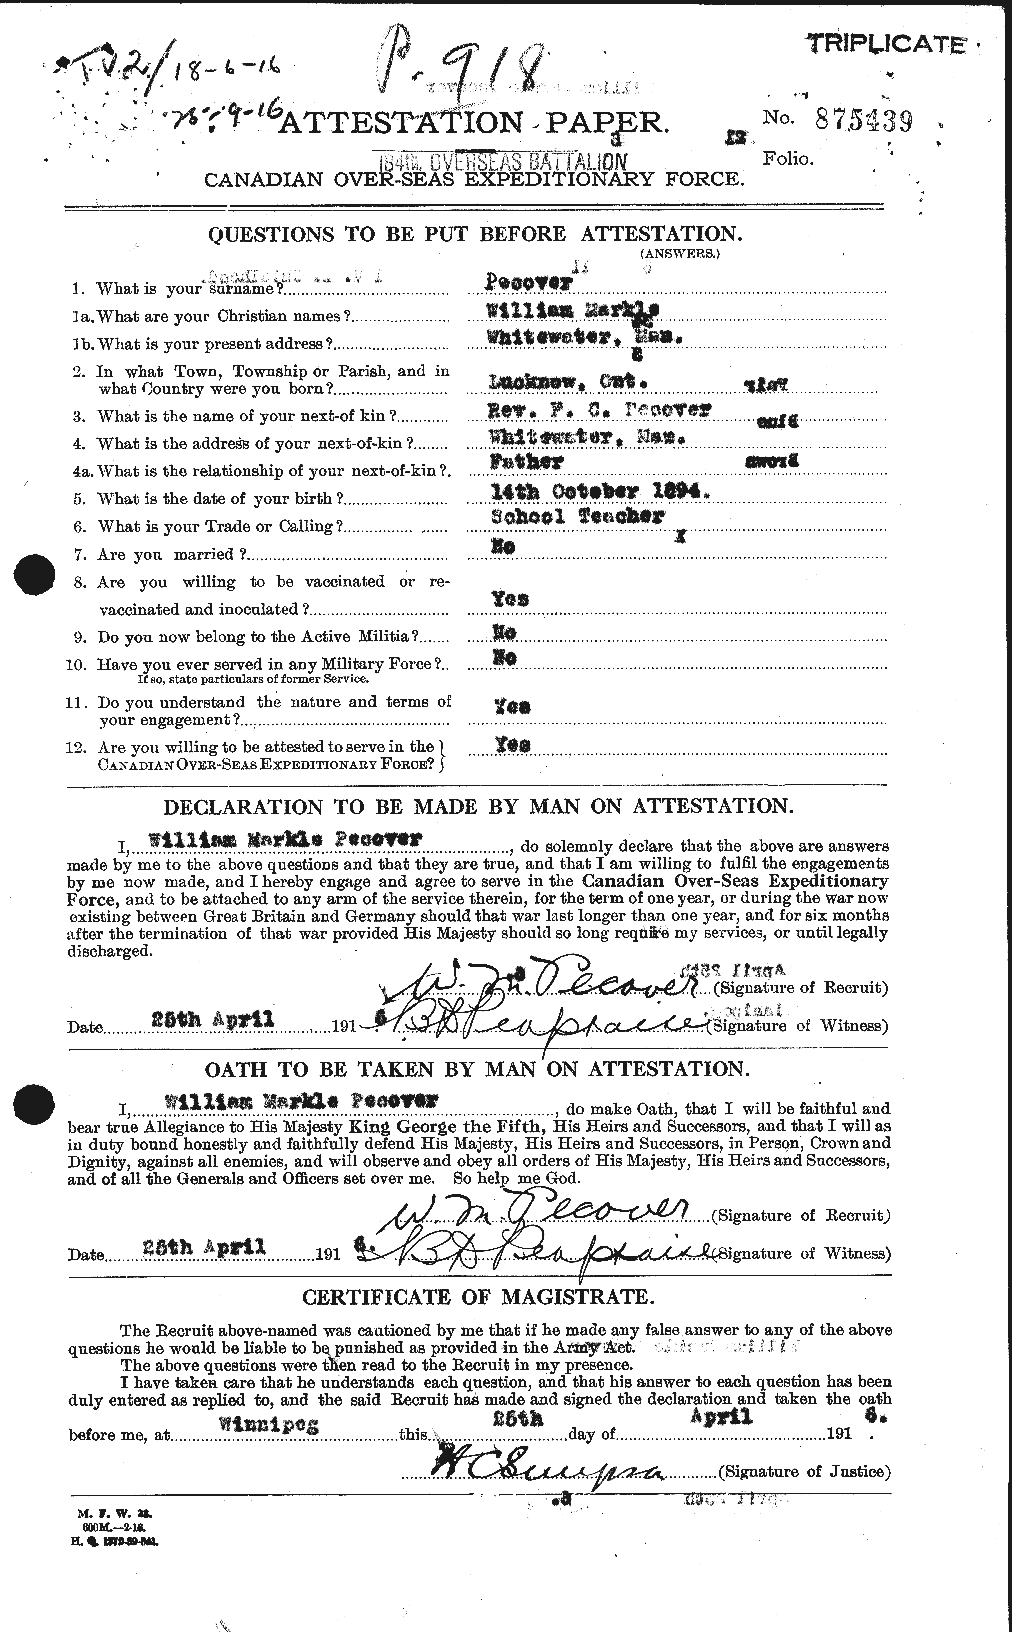 Dossiers du Personnel de la Première Guerre mondiale - CEC 571211a